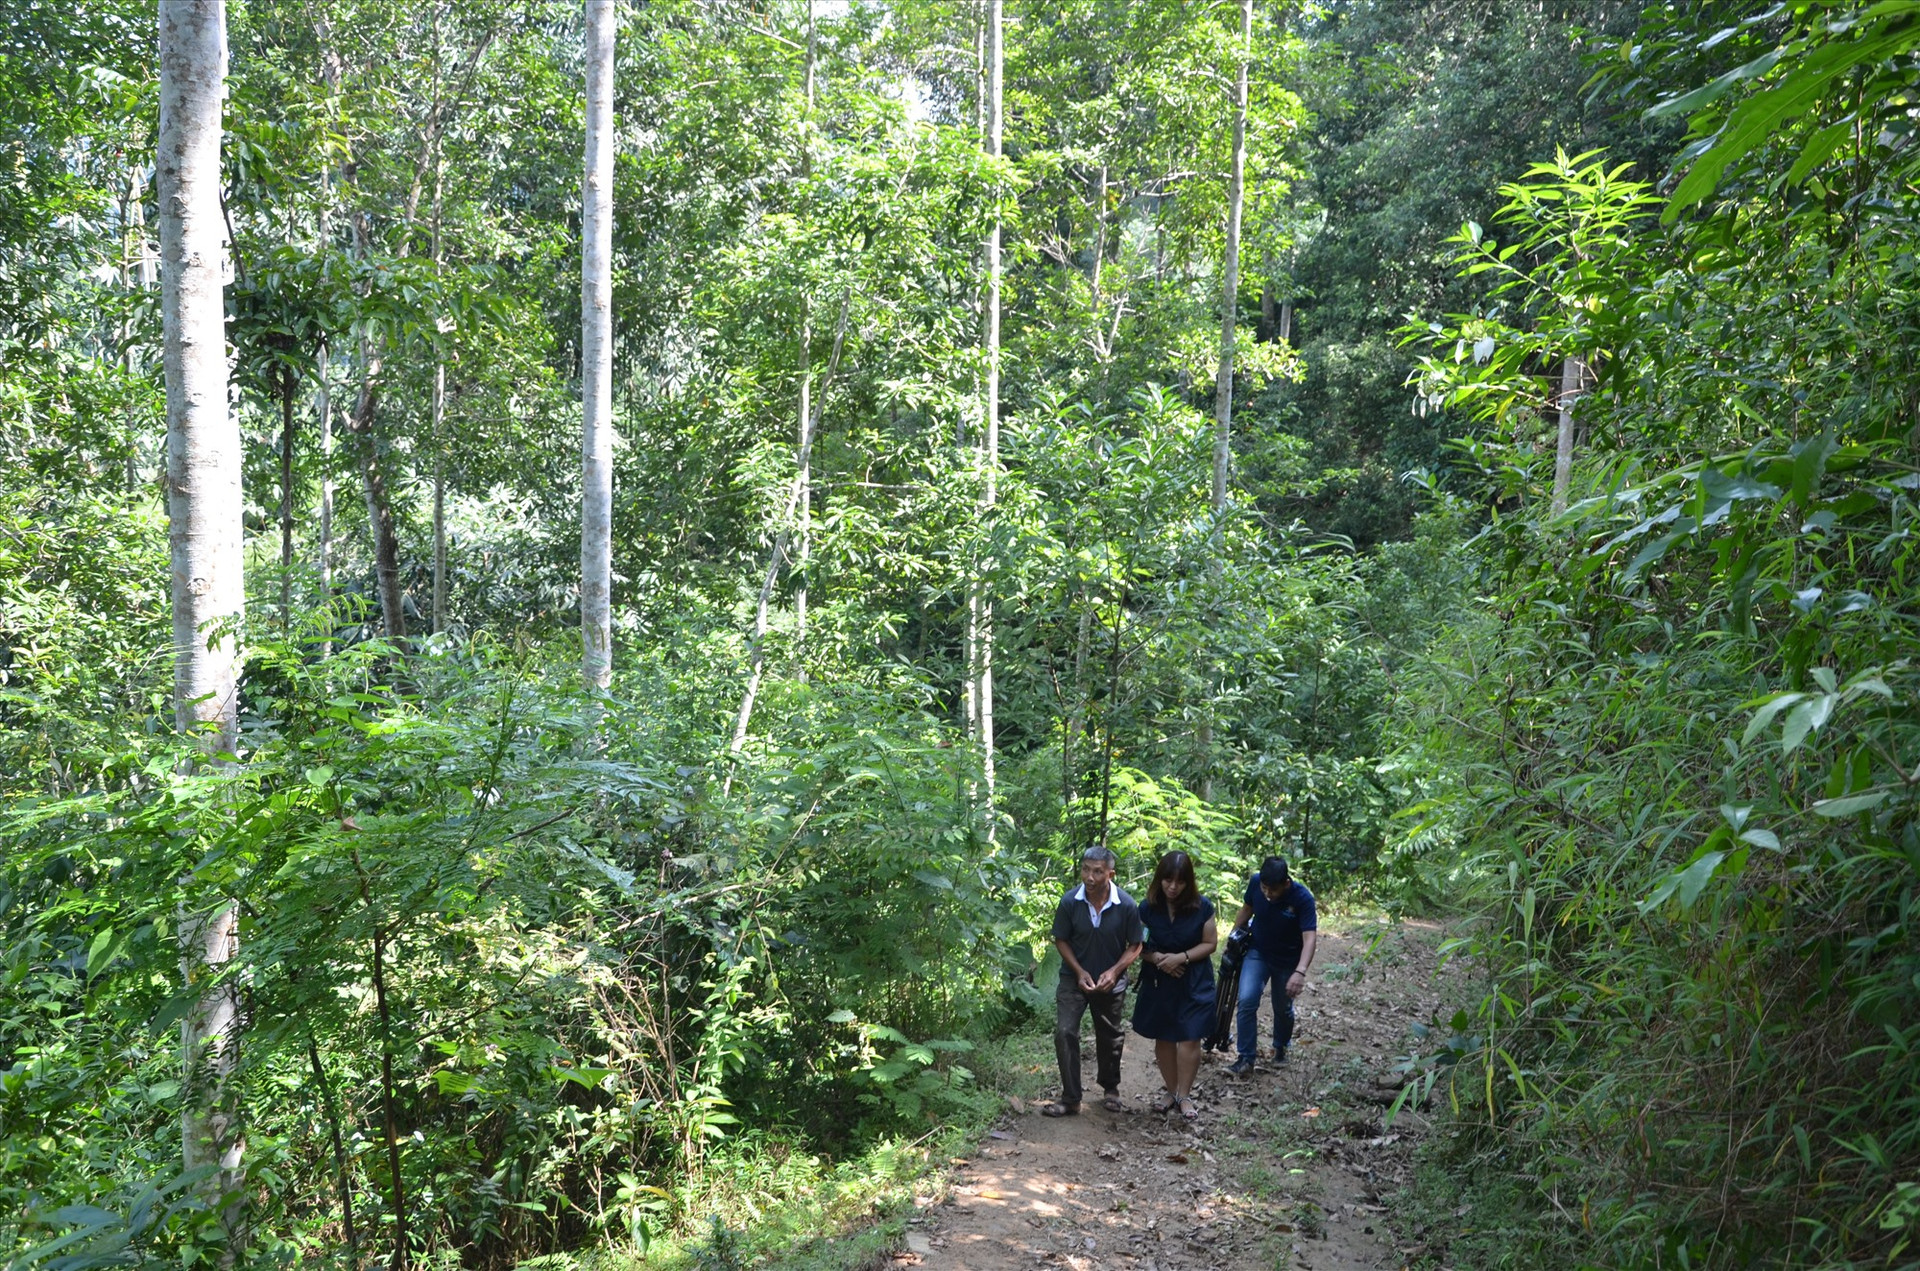 Nếu Trung ương quyết định quy định nguồn thu từ hấp thụ và lưu giữ các bon của rừng, Quảng Nam sẽ có thêm nguồn thu mở rộng dịch vụ môi trường rừng. Ảnh: H.P